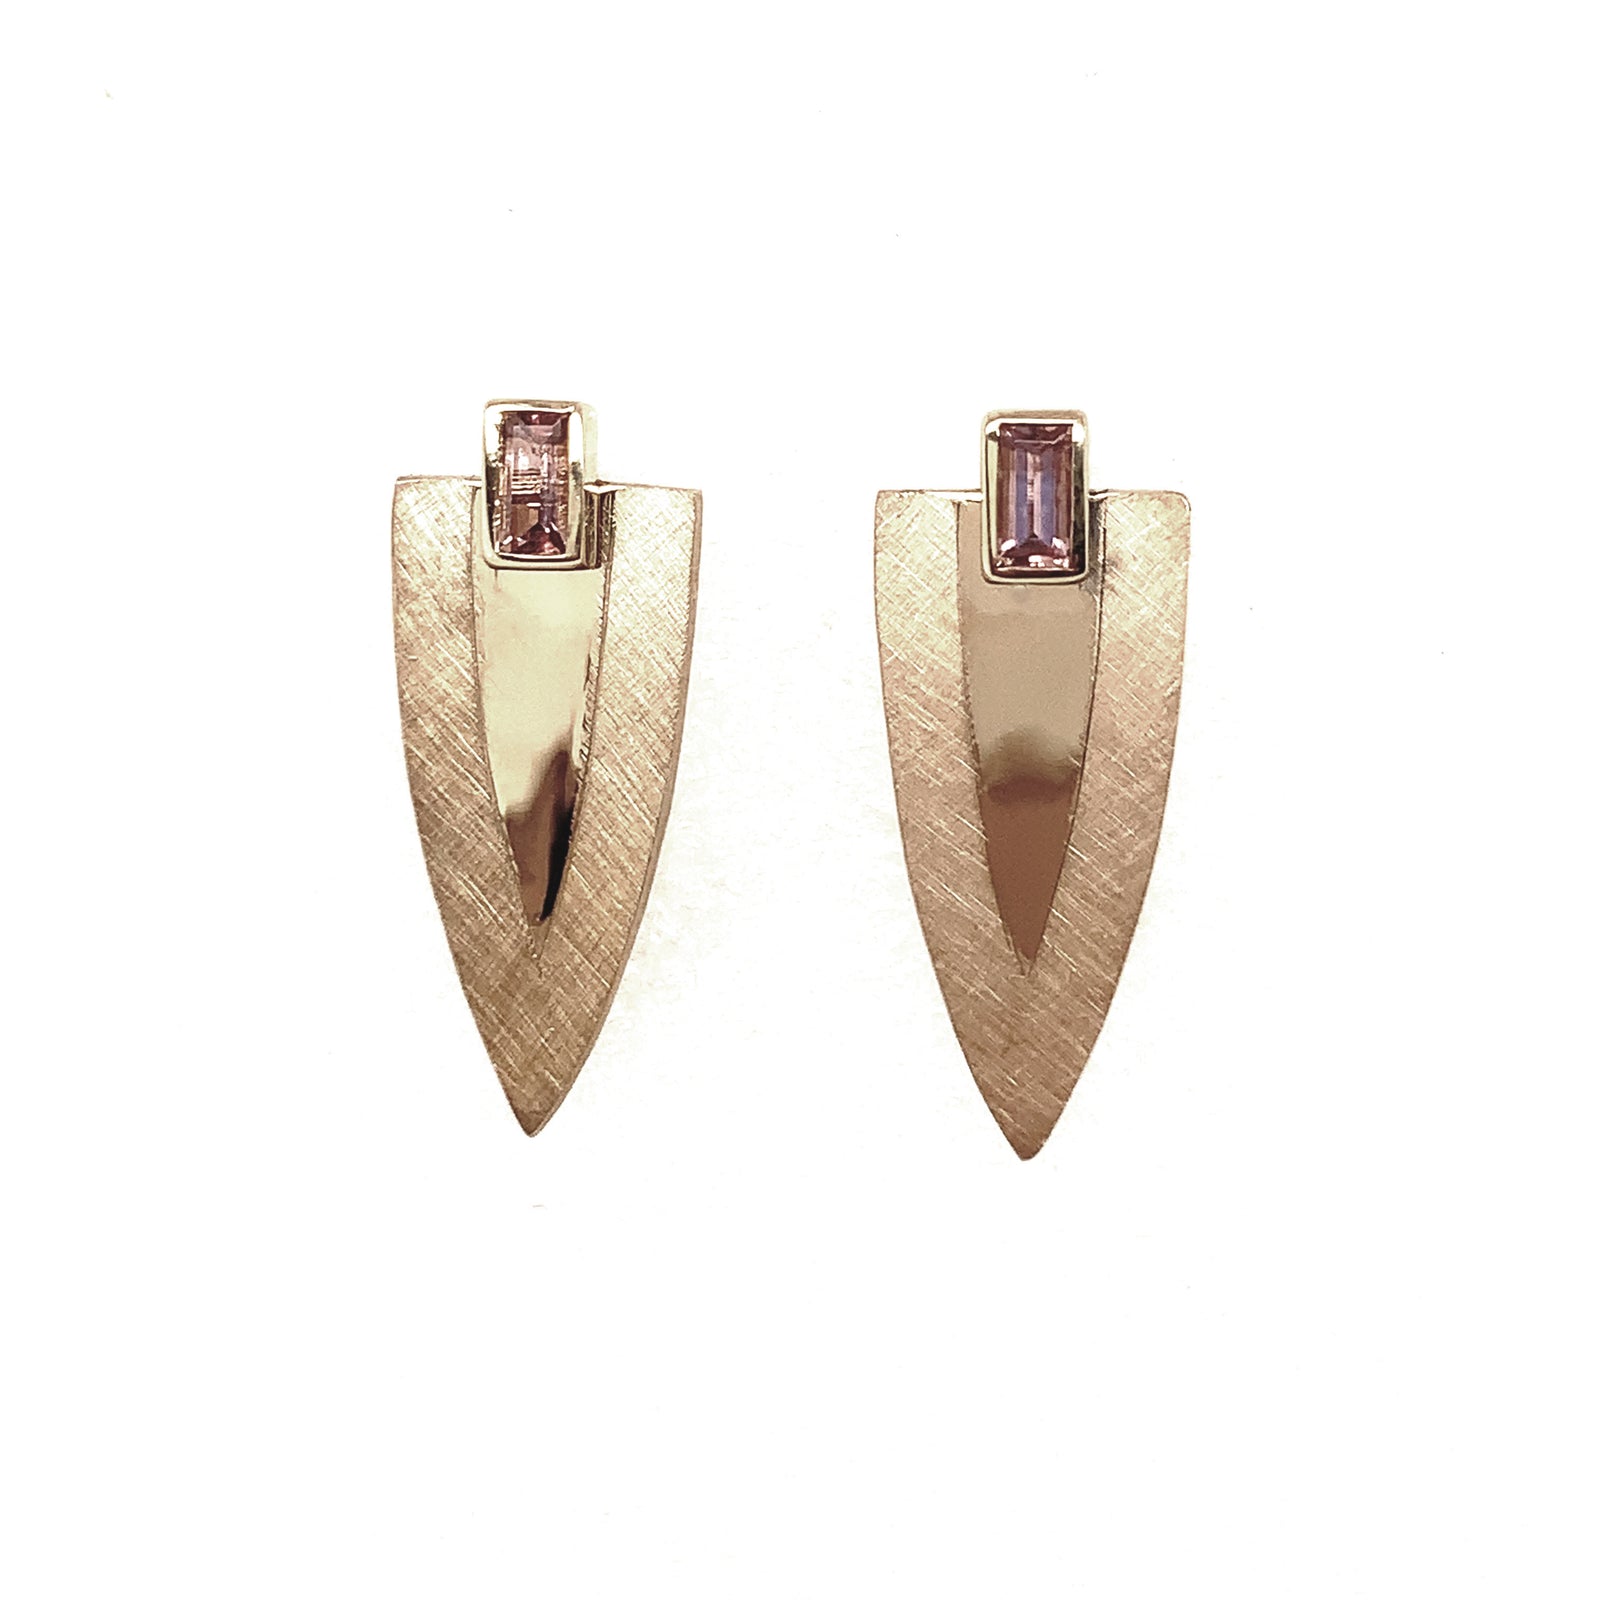 round druzy earrings – julie barkan jewelry